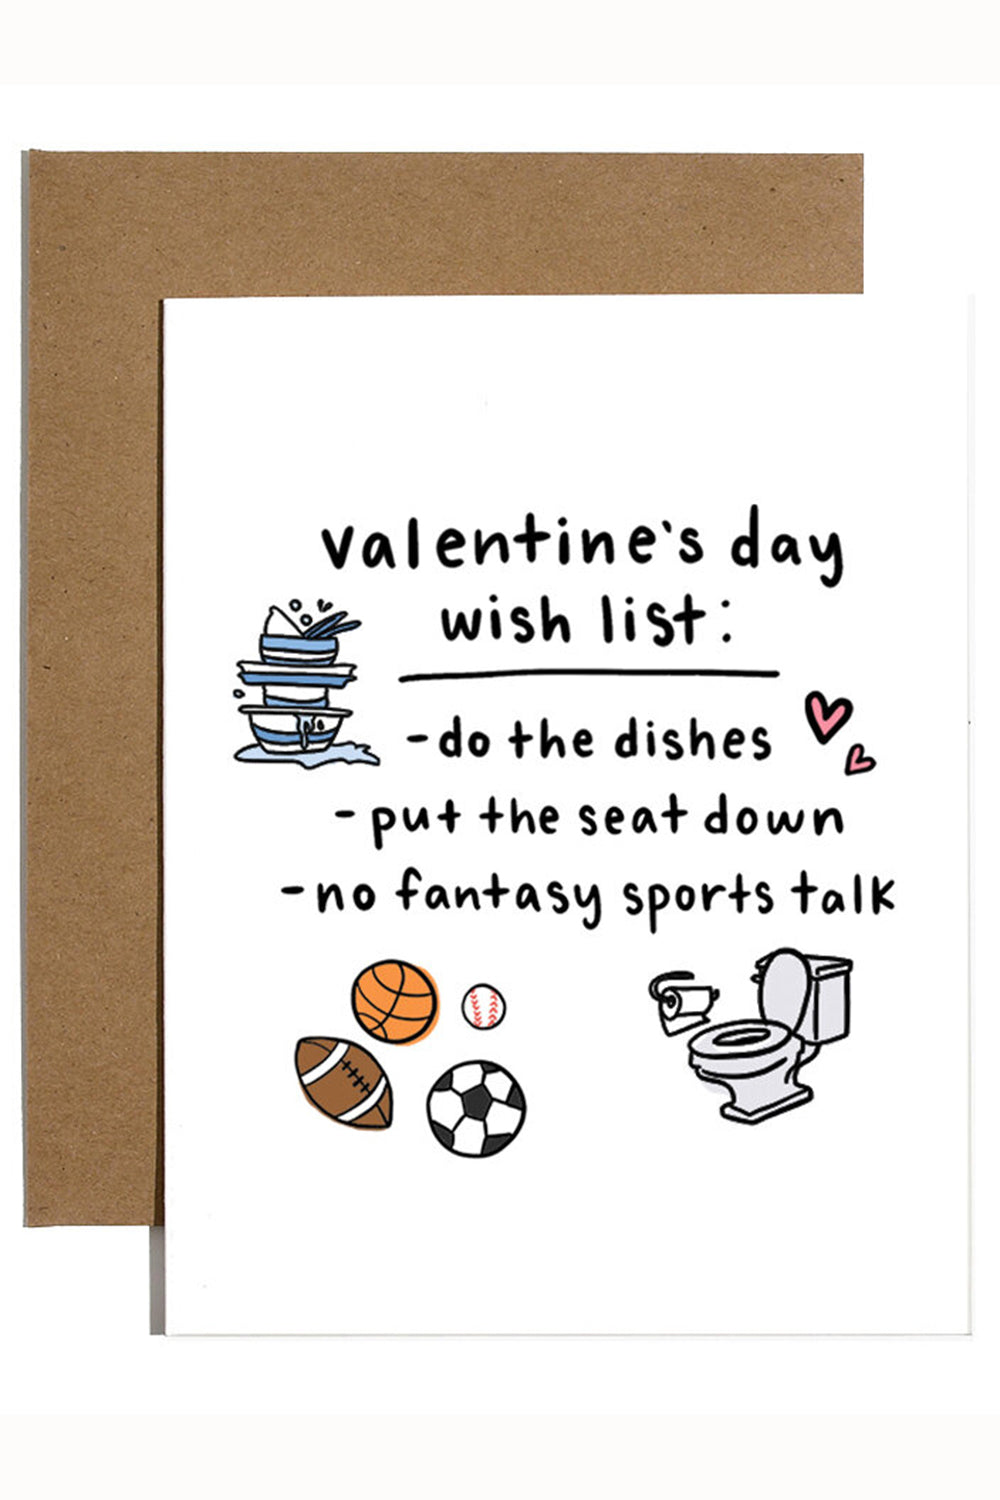 Trendy Valentine's Day Card - Wish List